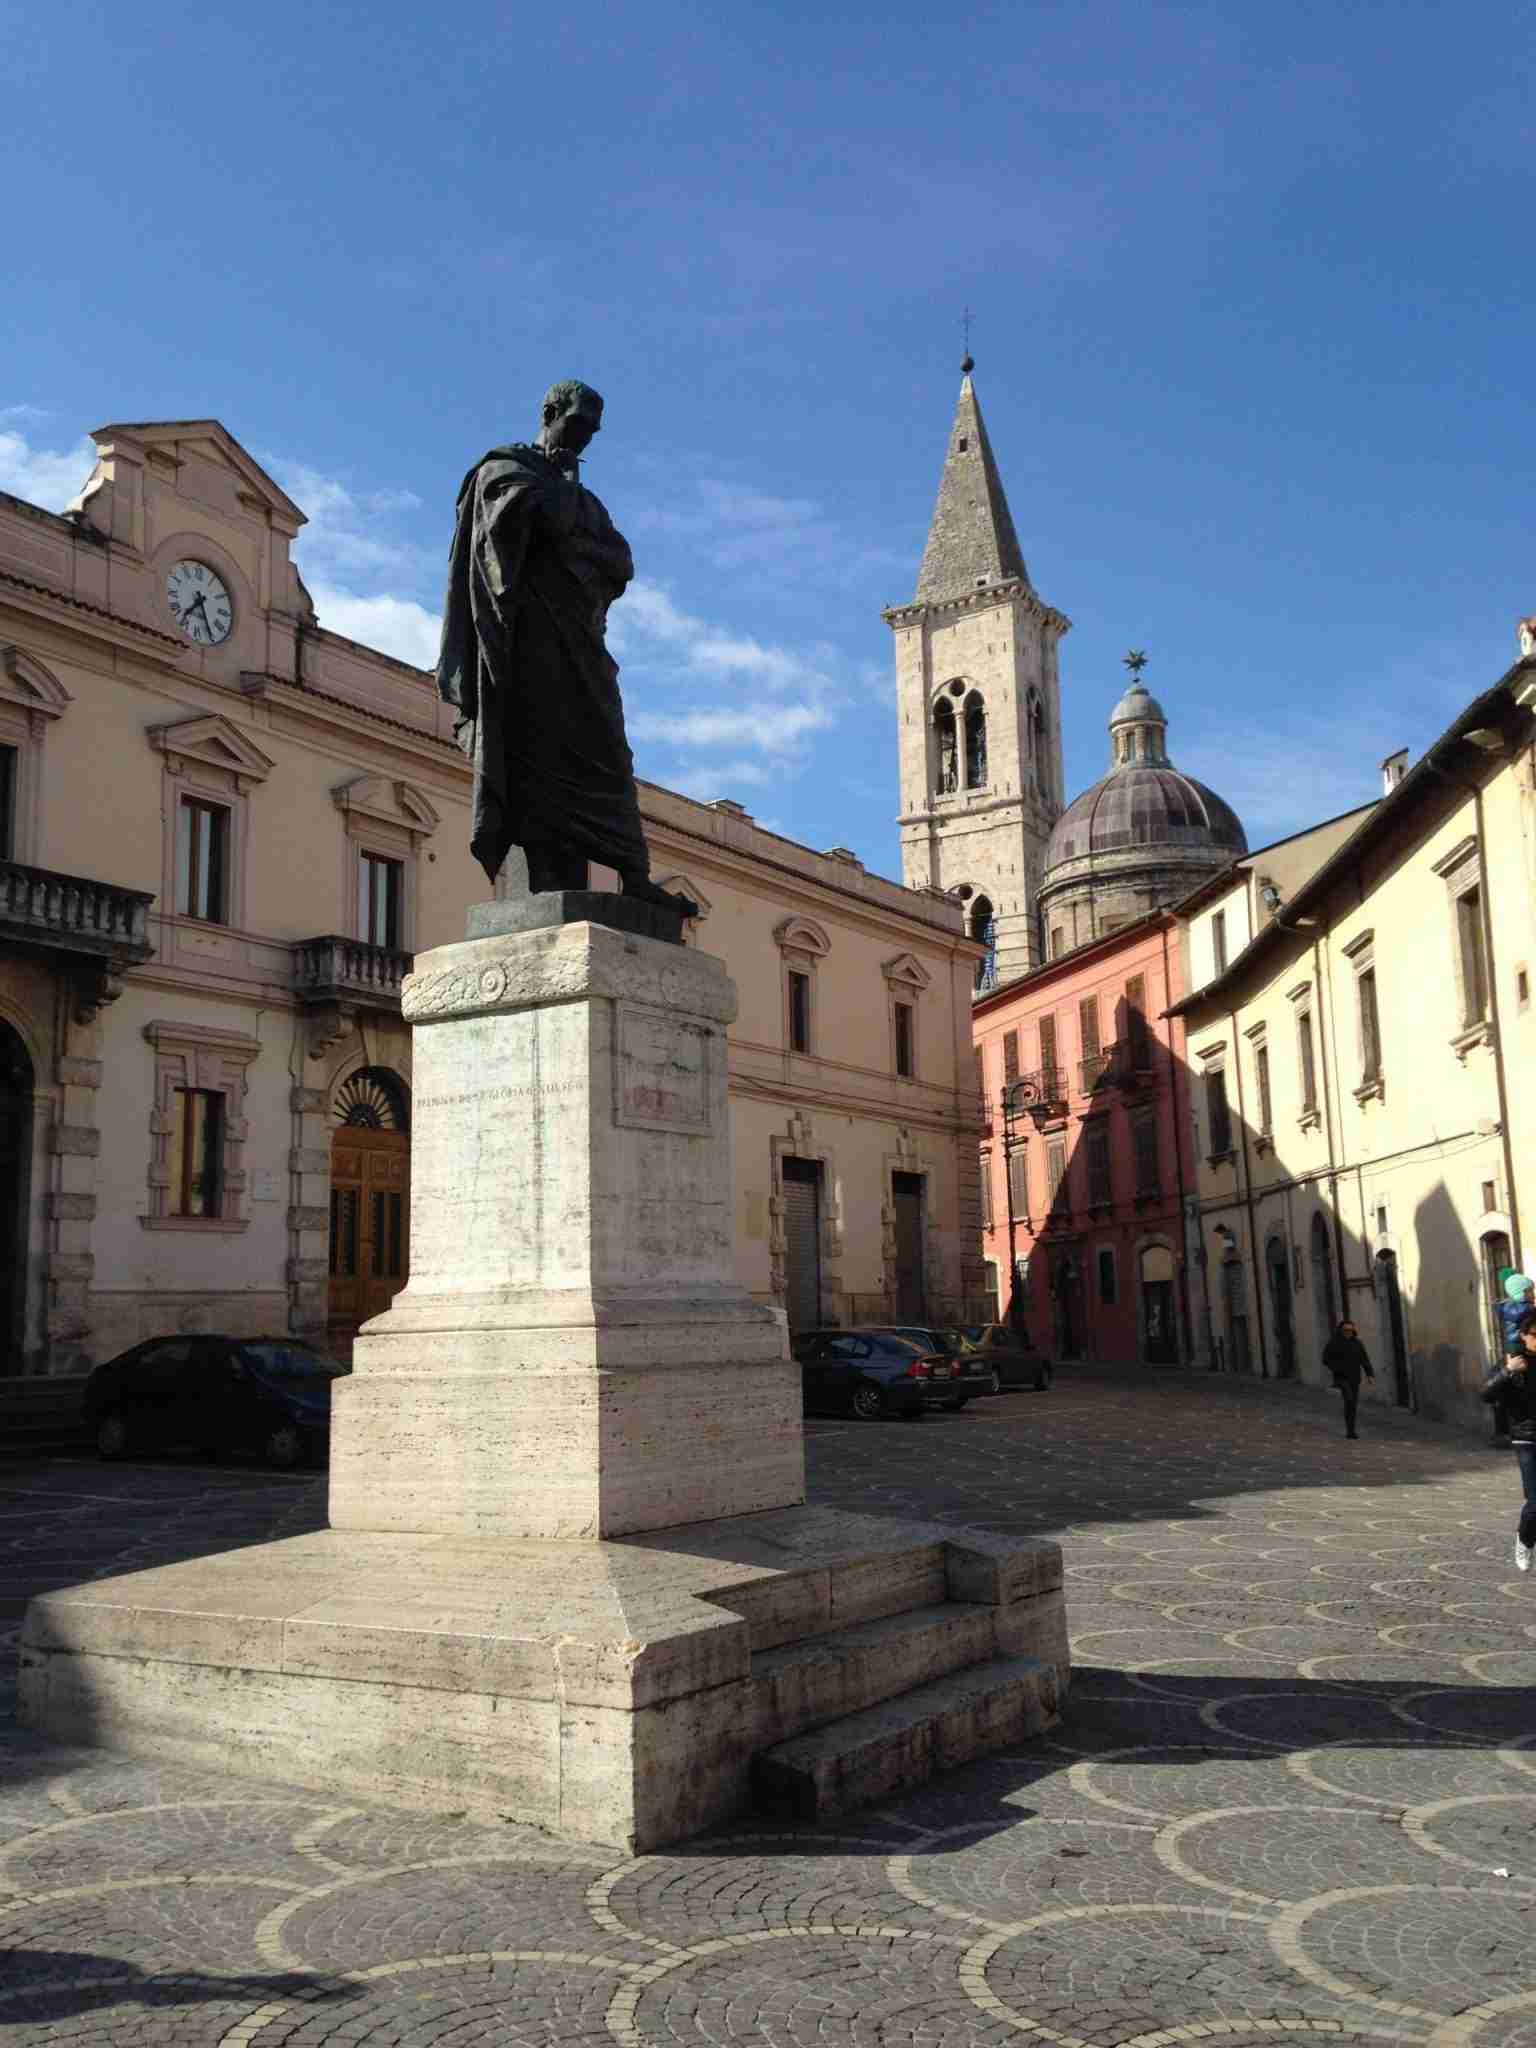 Statue of Ovid in Sulmona